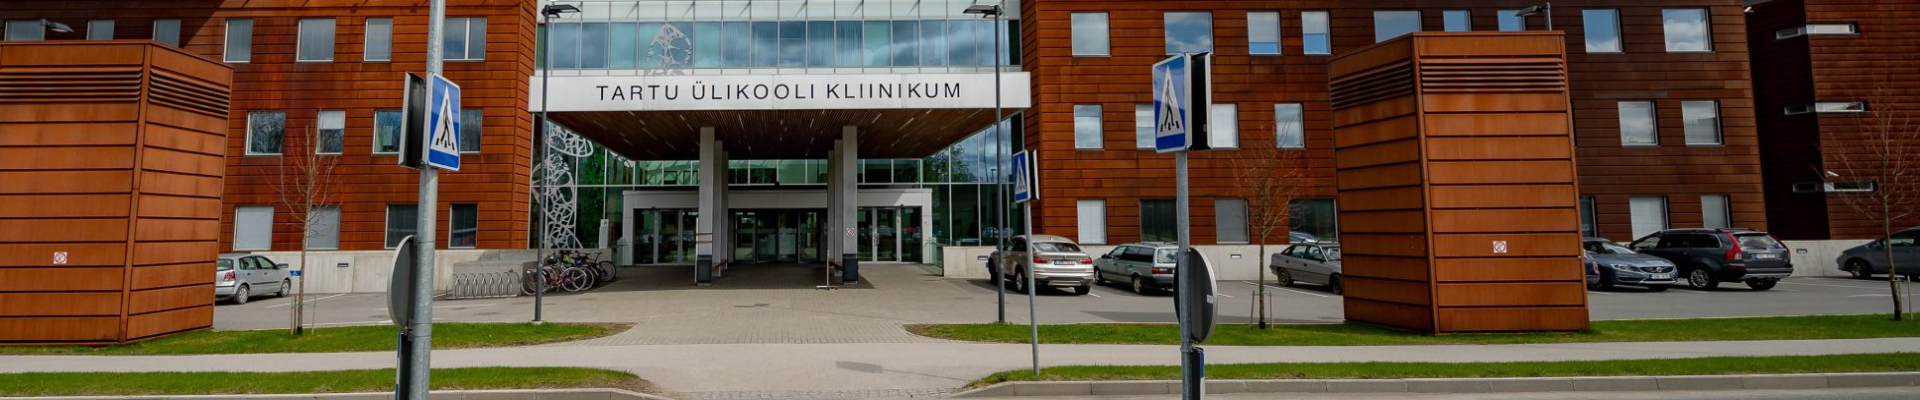 Tartu Ülikooli Kliinikum on Euroopas tunnustatud ülikoolihaigla, millel on juhtiv roll Eesti meditsiinis.